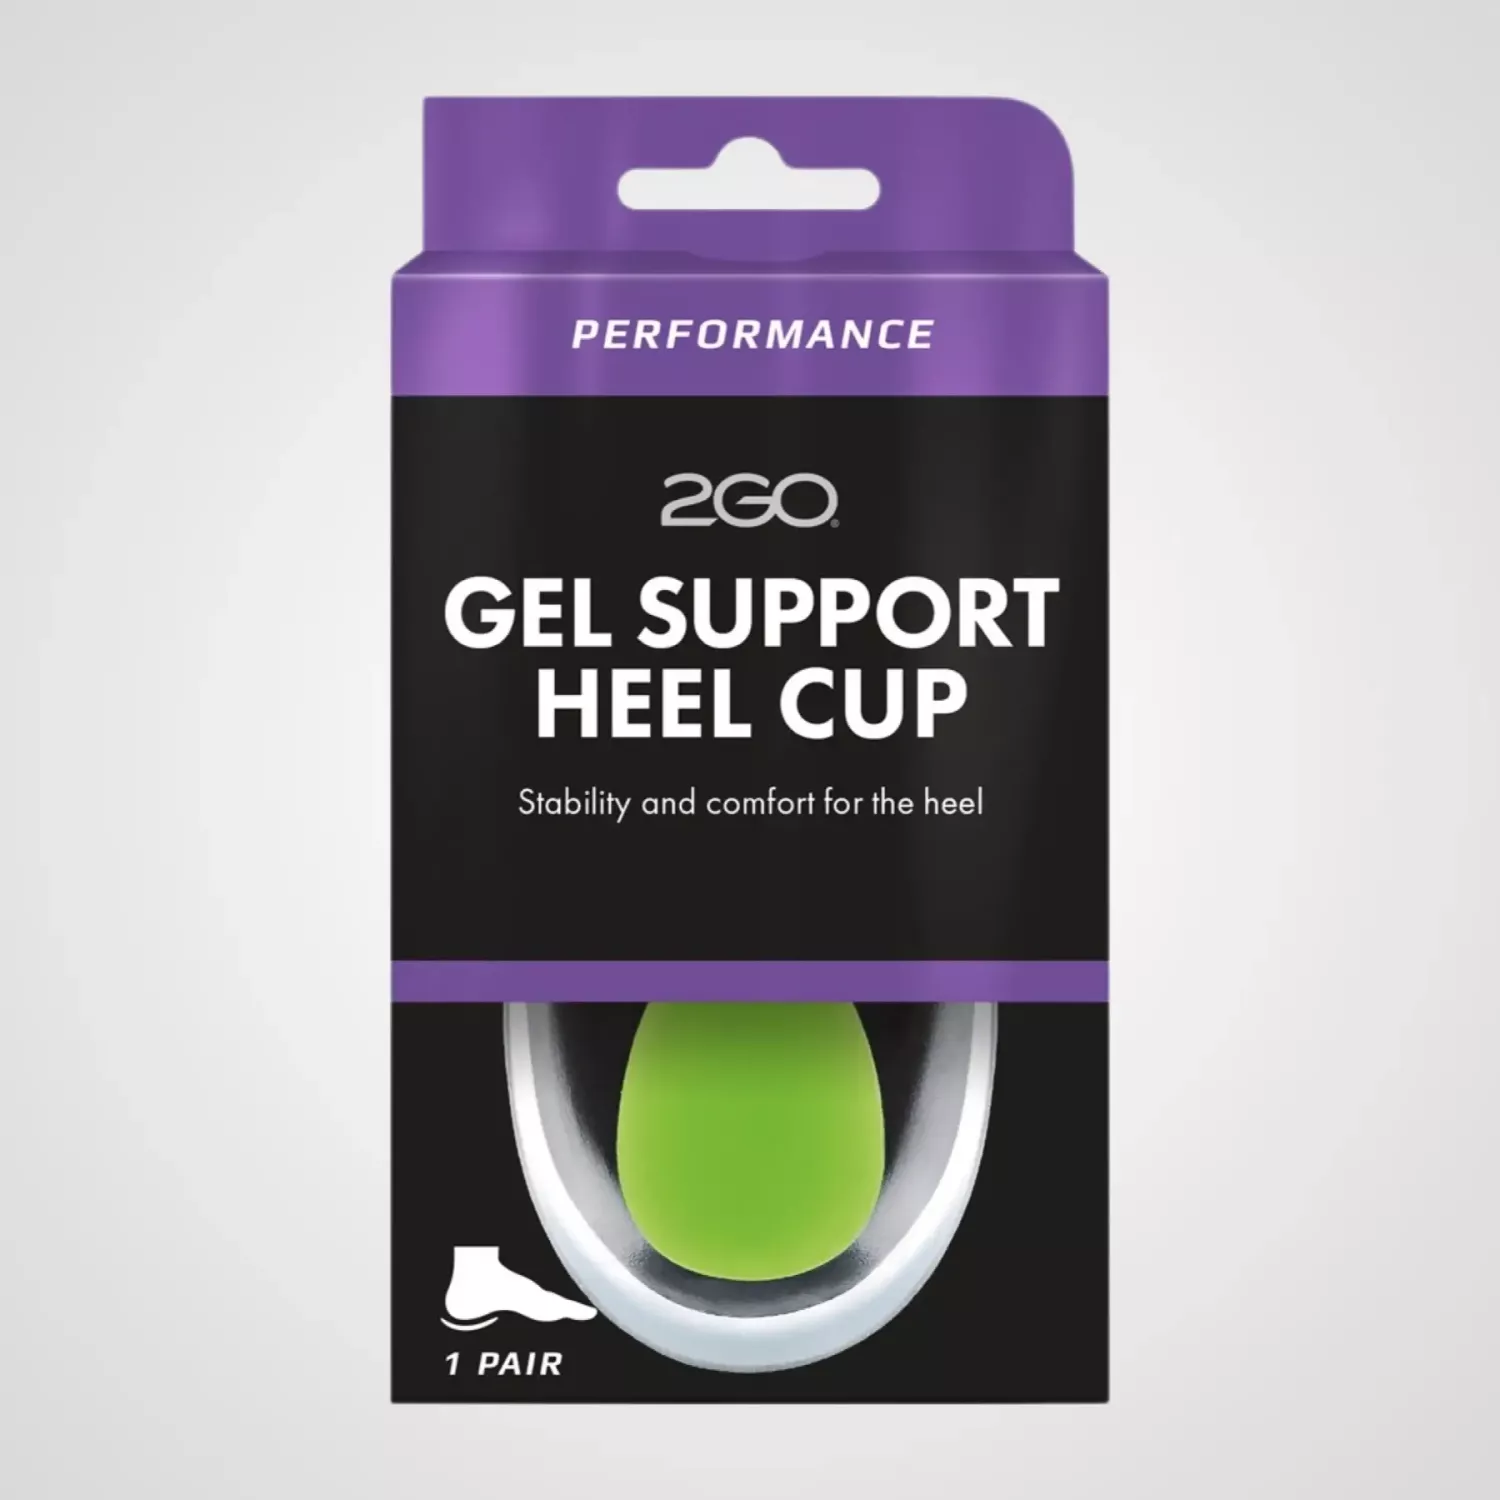 2GO Gek Support Heel Cup